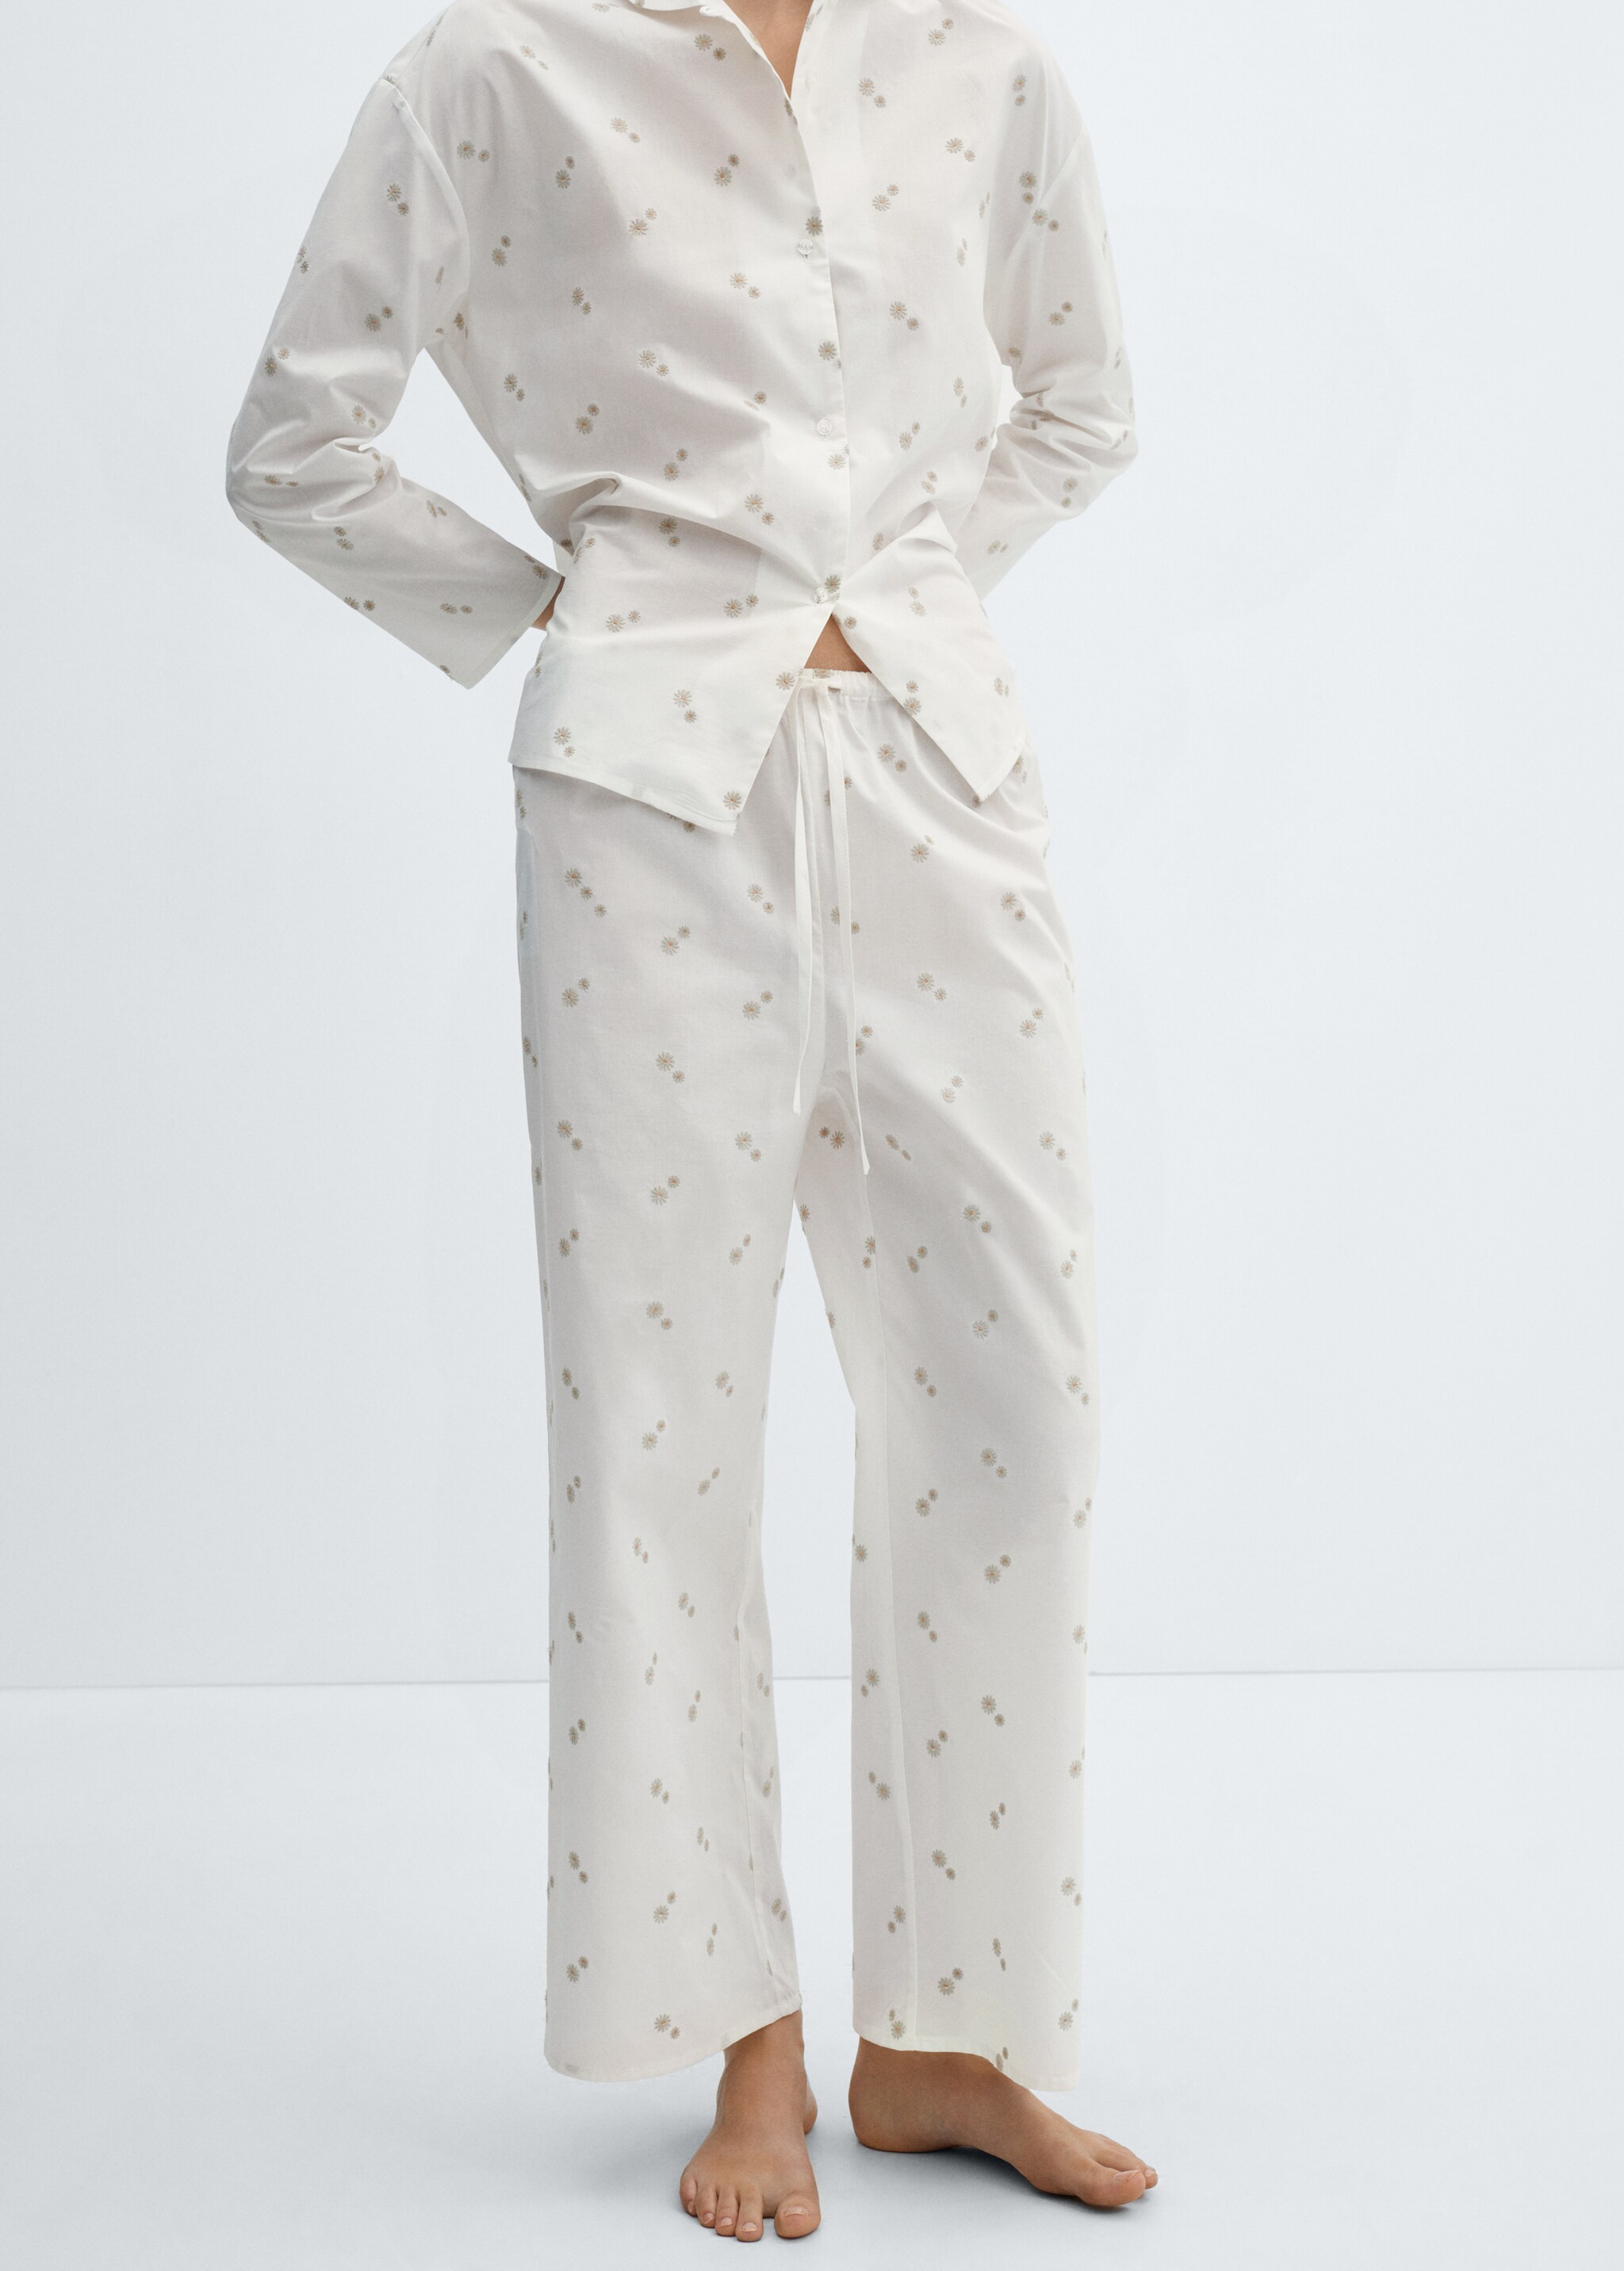 Pantalon pyjama coton broderie florale - Plan moyen